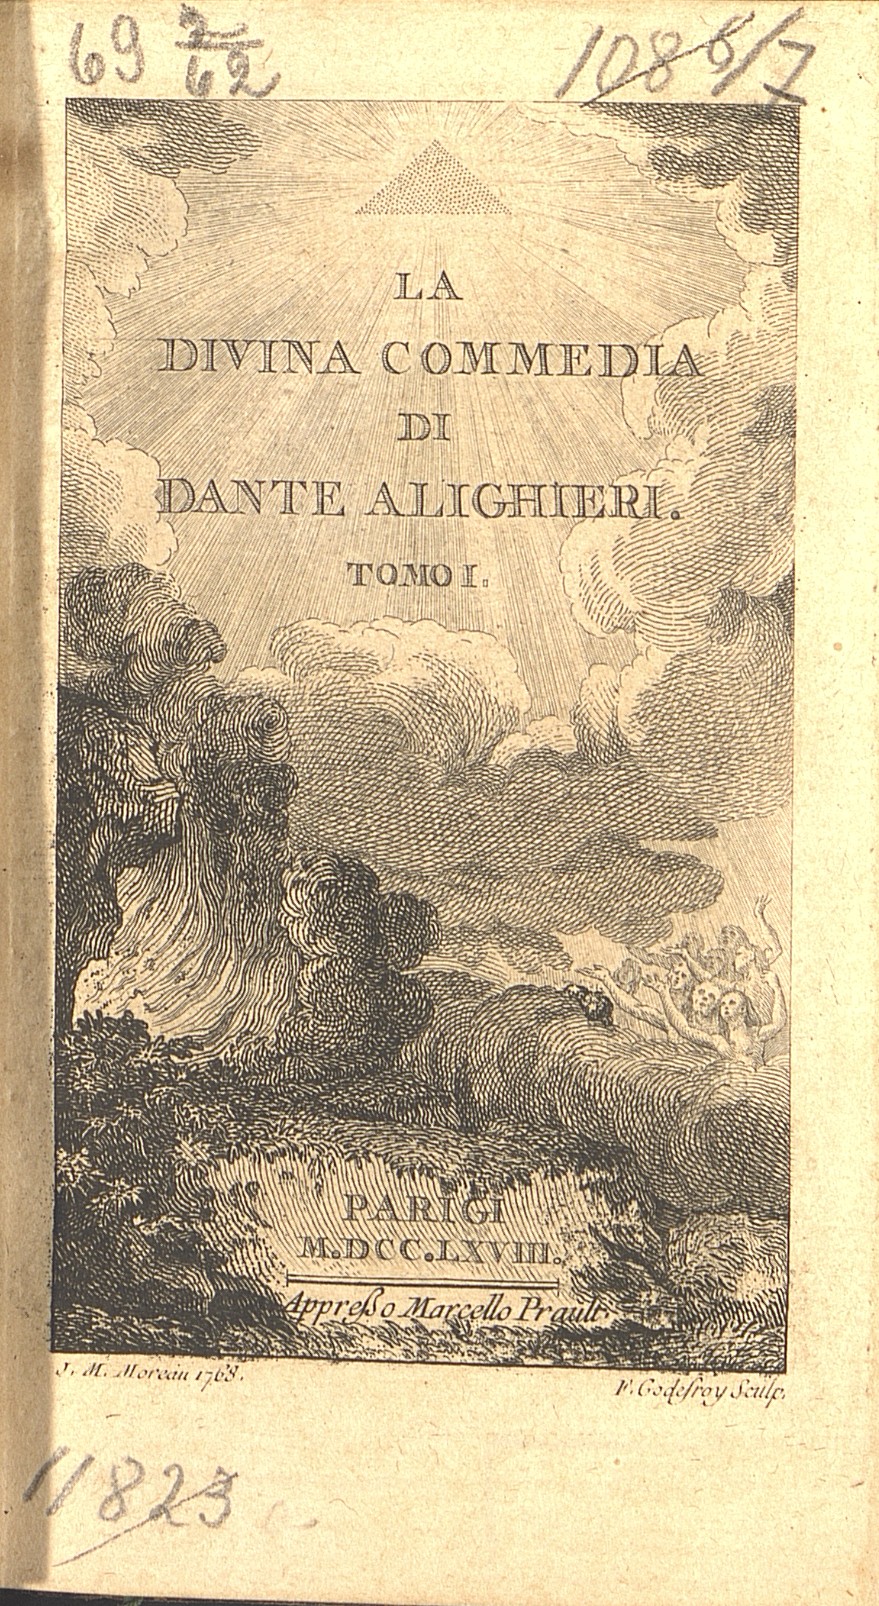 Титульный лист 1 тома издания Данте Алигьери «Божественная комедия» (Париж, 1768 г.)